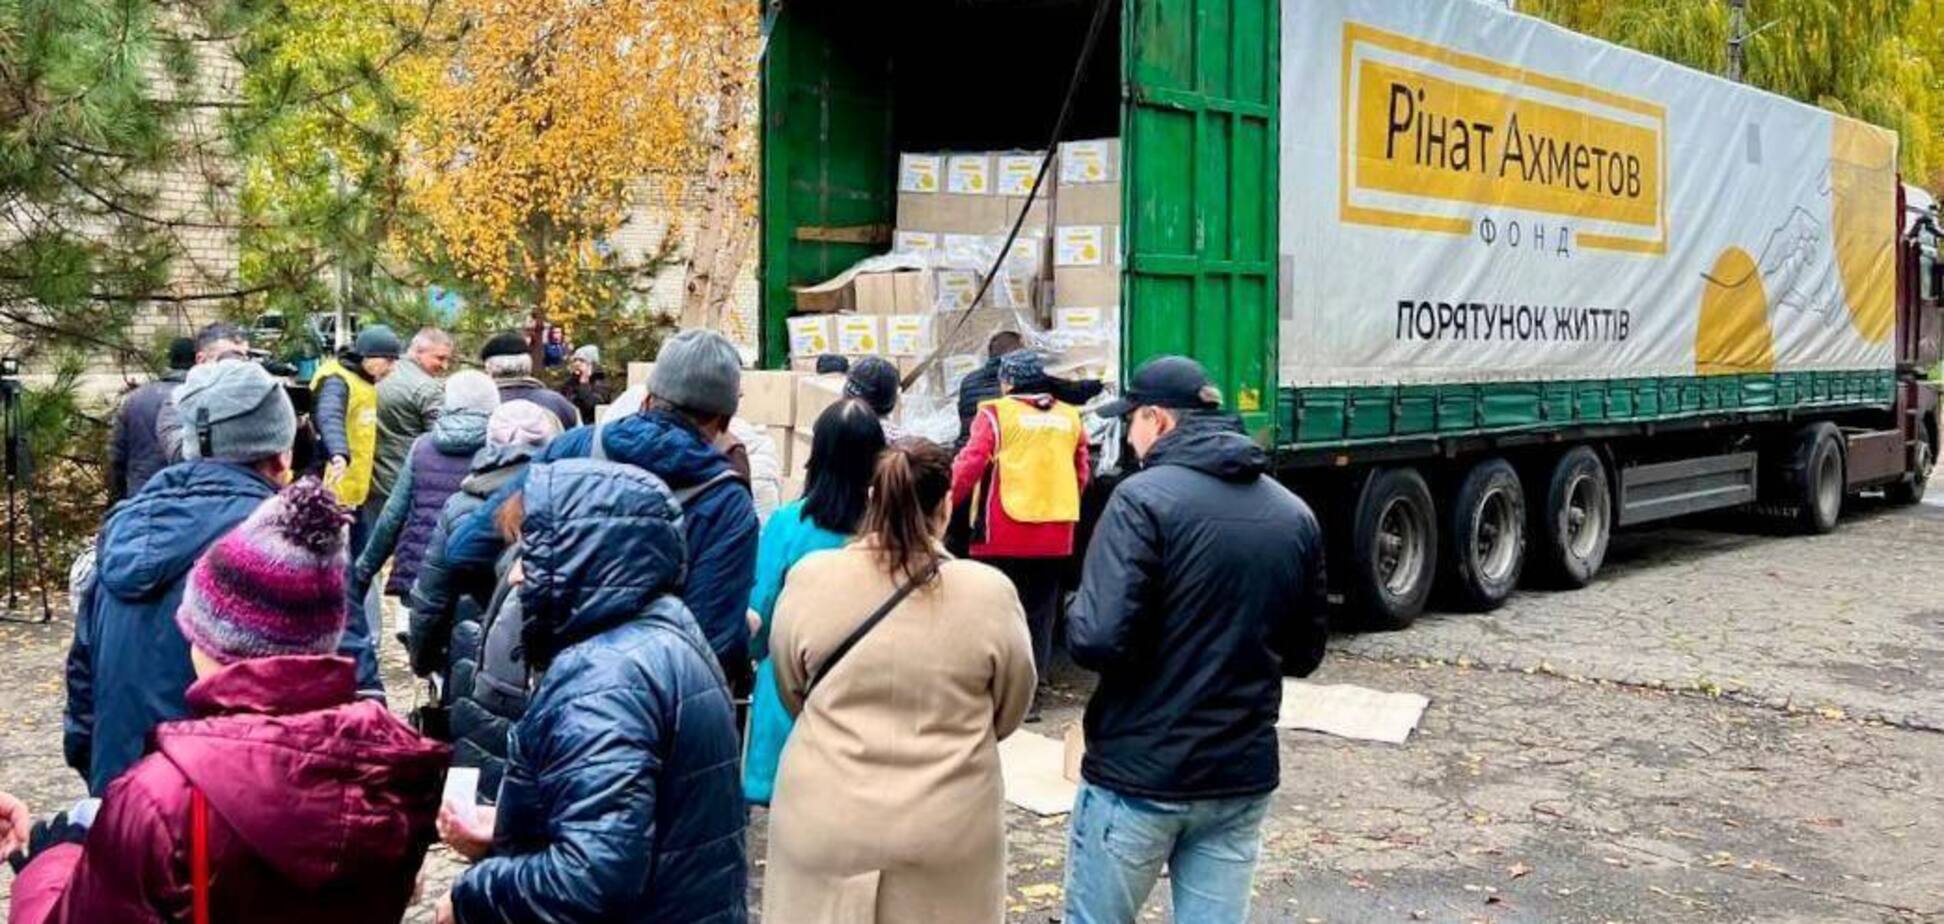 Мешканці Донеччини отримали гуманітарну допомогу від Фонду Ахметова